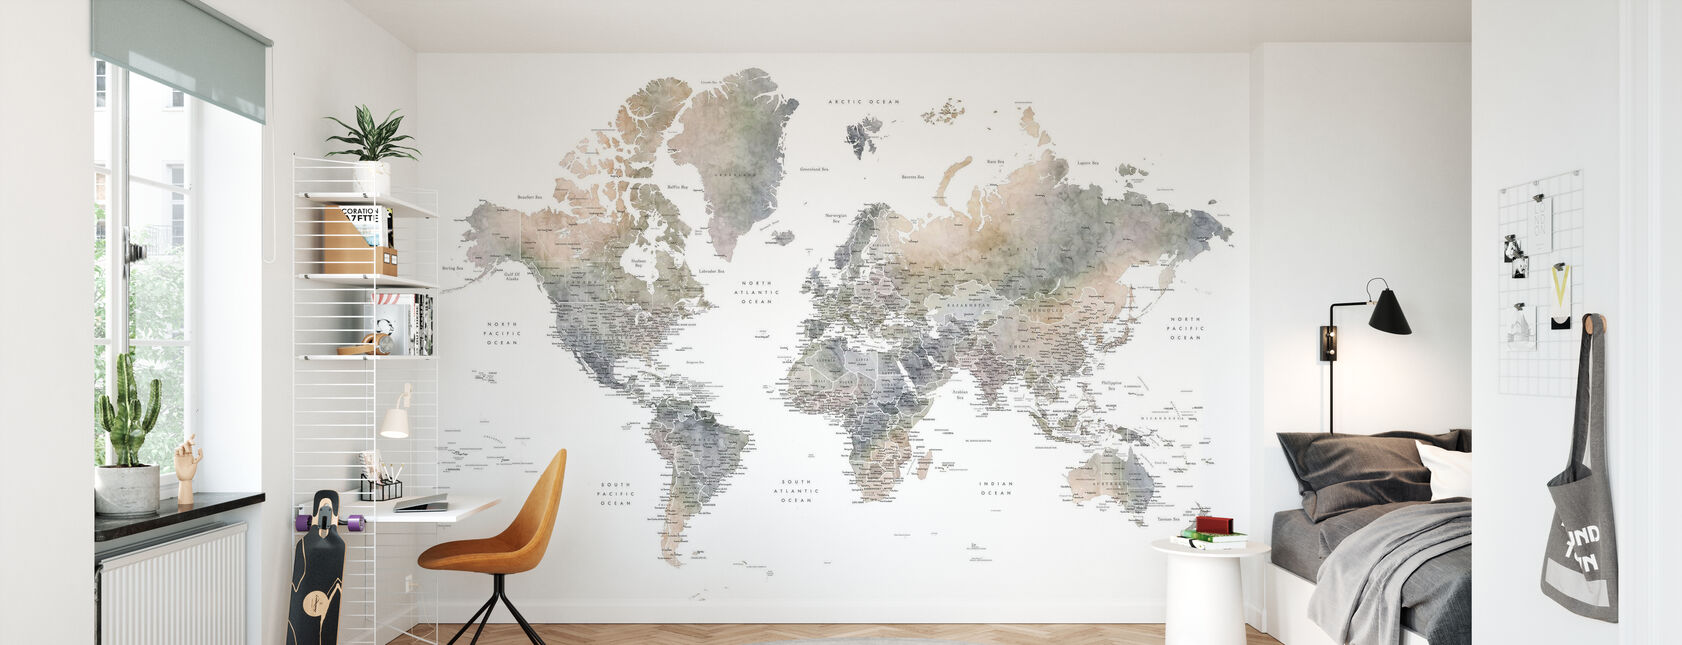 Weltkarte mit Städten - Tapete - Kinderzimmer